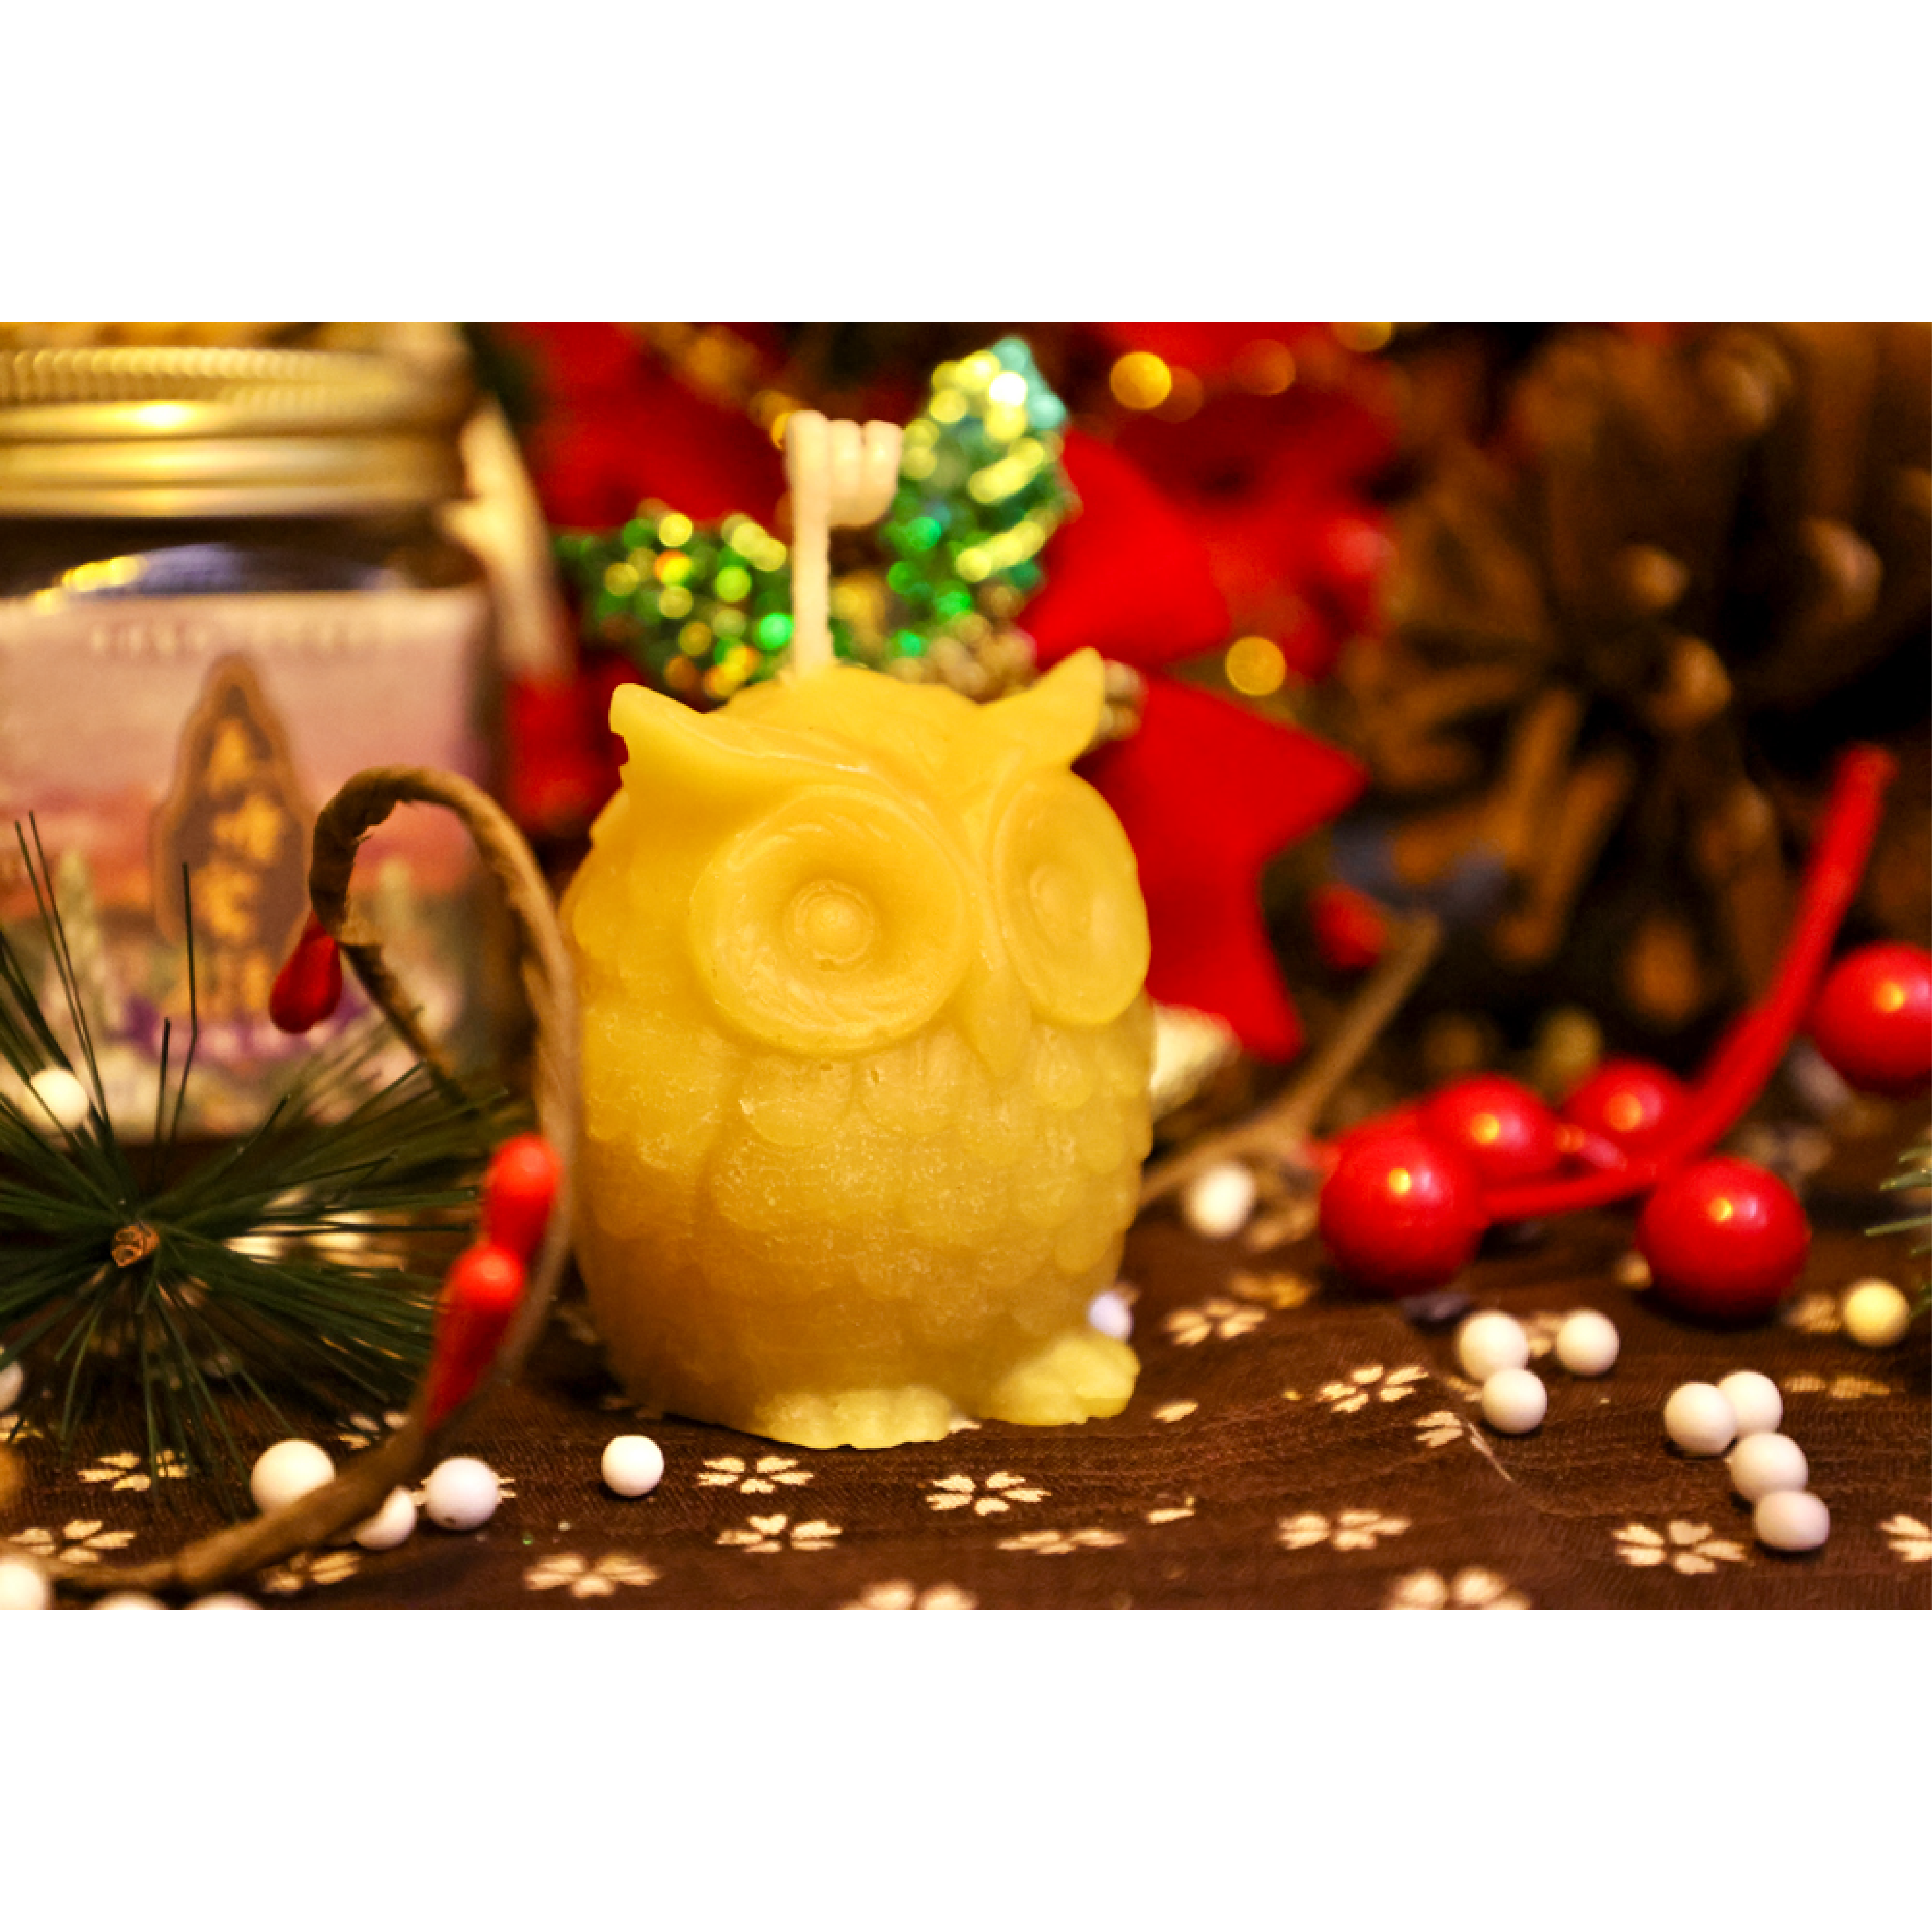 【魚塘蜜語】貓頭鷹造型蜂蠟蠟燭   Beeswax Owl Shaped Candle